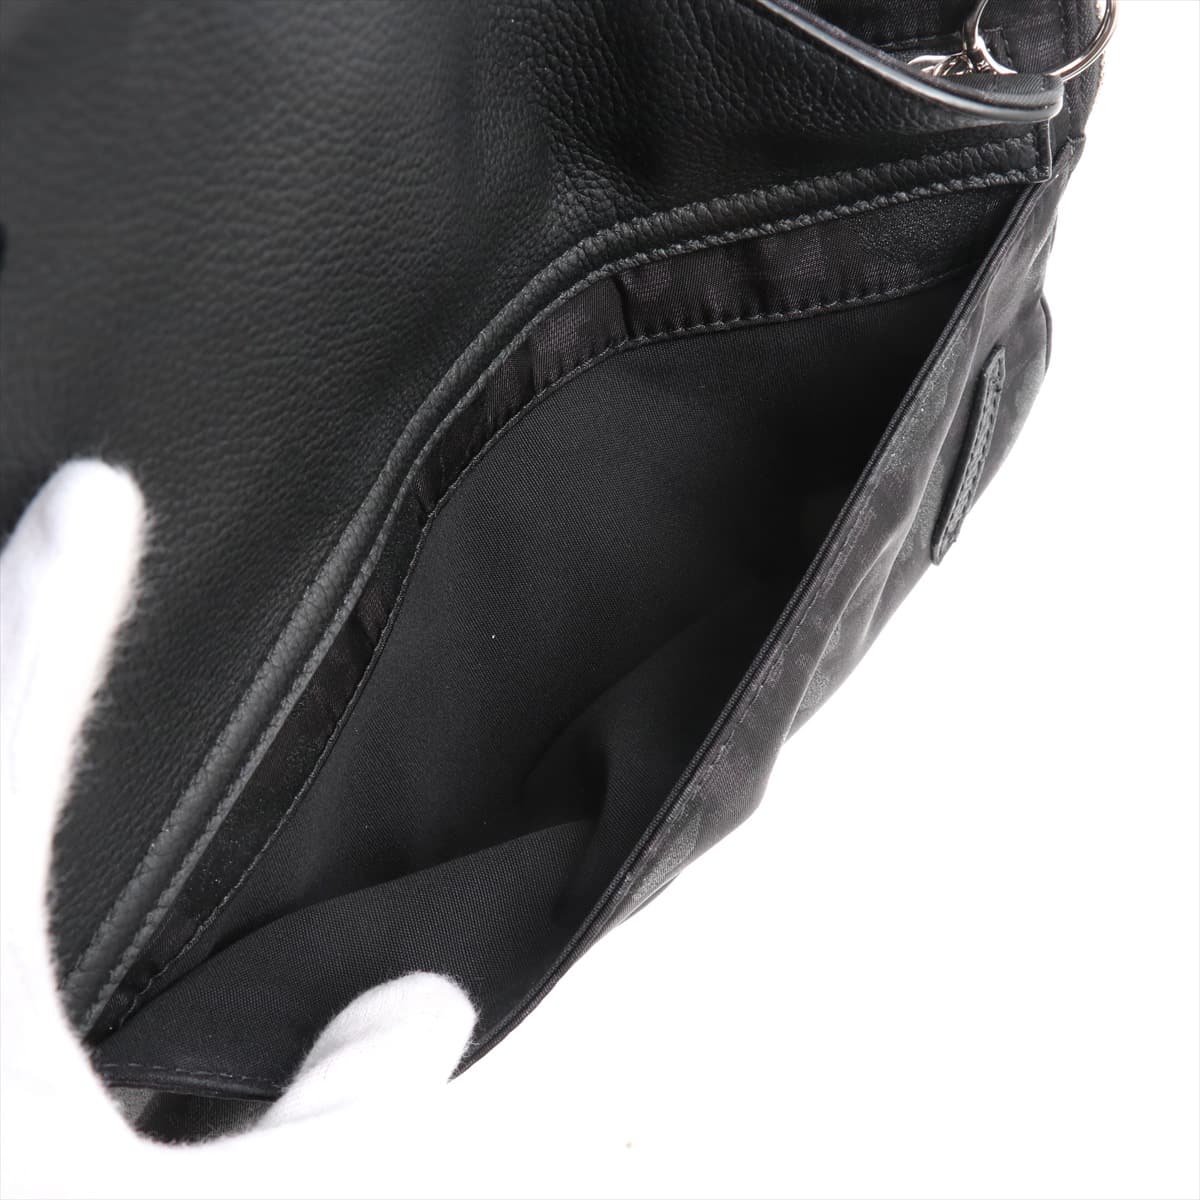 Christian Dior Trotter Saddle Canvas & leather Sling backpack Black